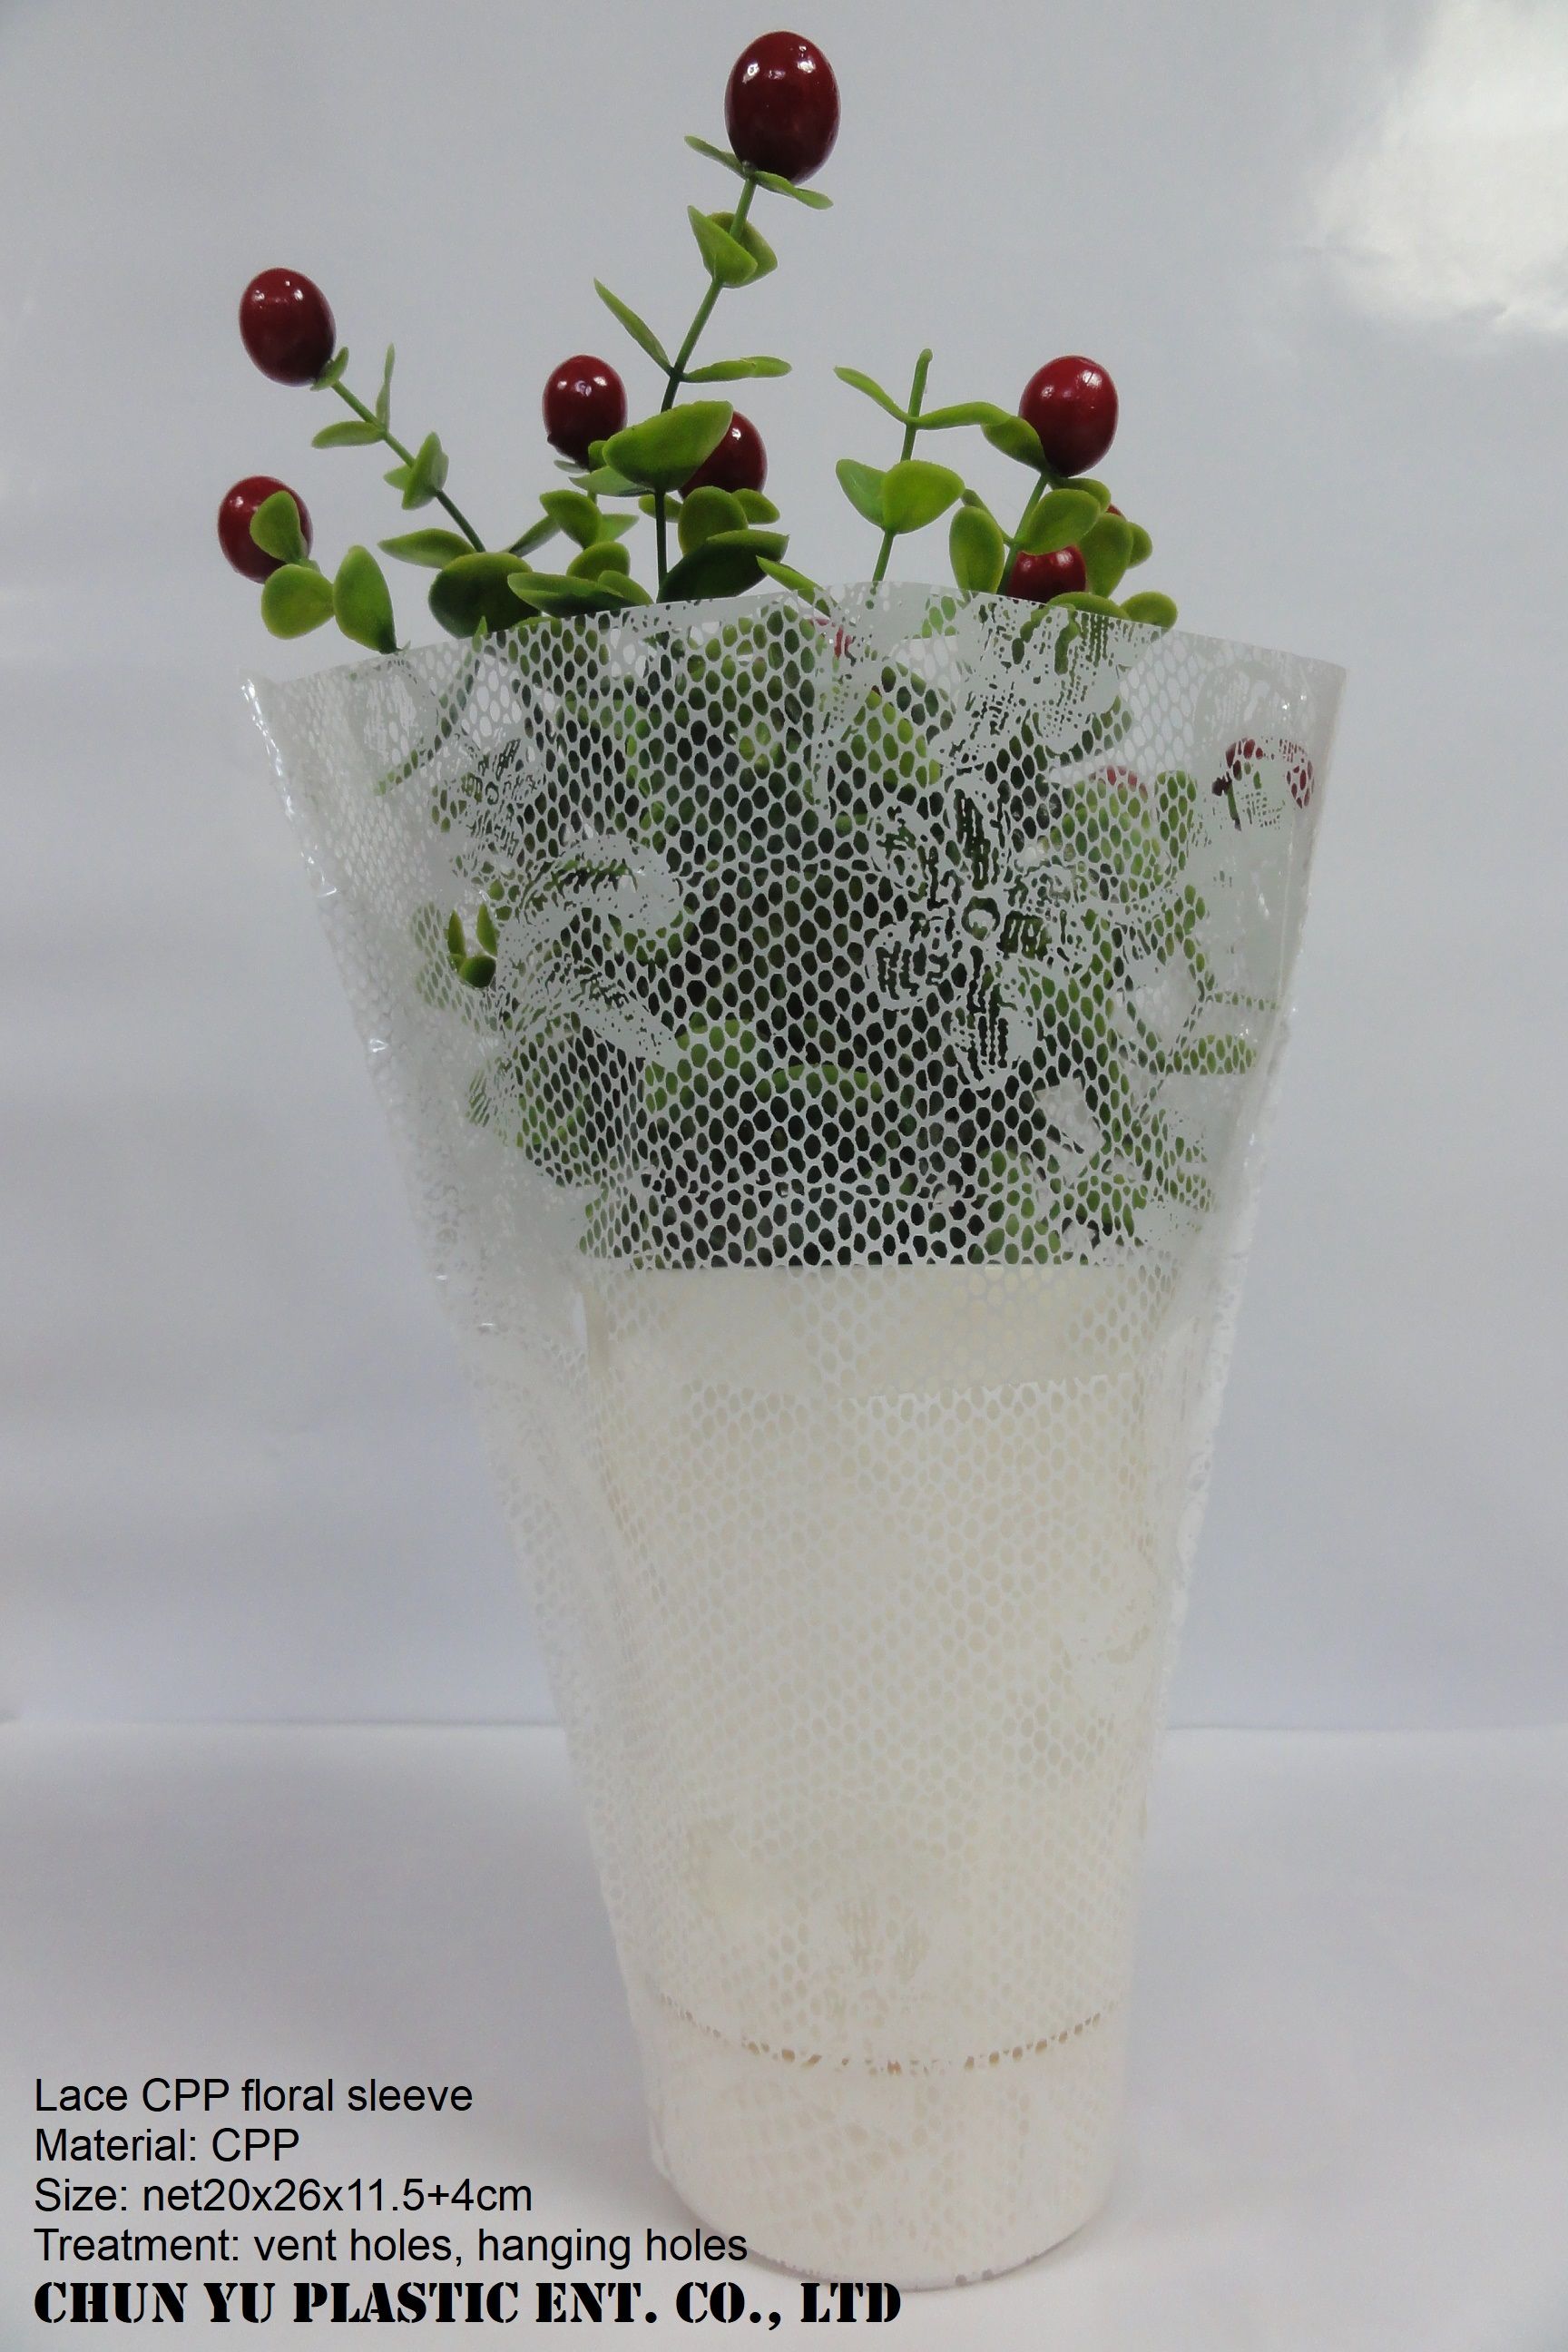 حقيبة زهرة CPP بتصميم الدانتيل للنباتات المحفوظة في أصص وباقات الزهور المقطوعة.